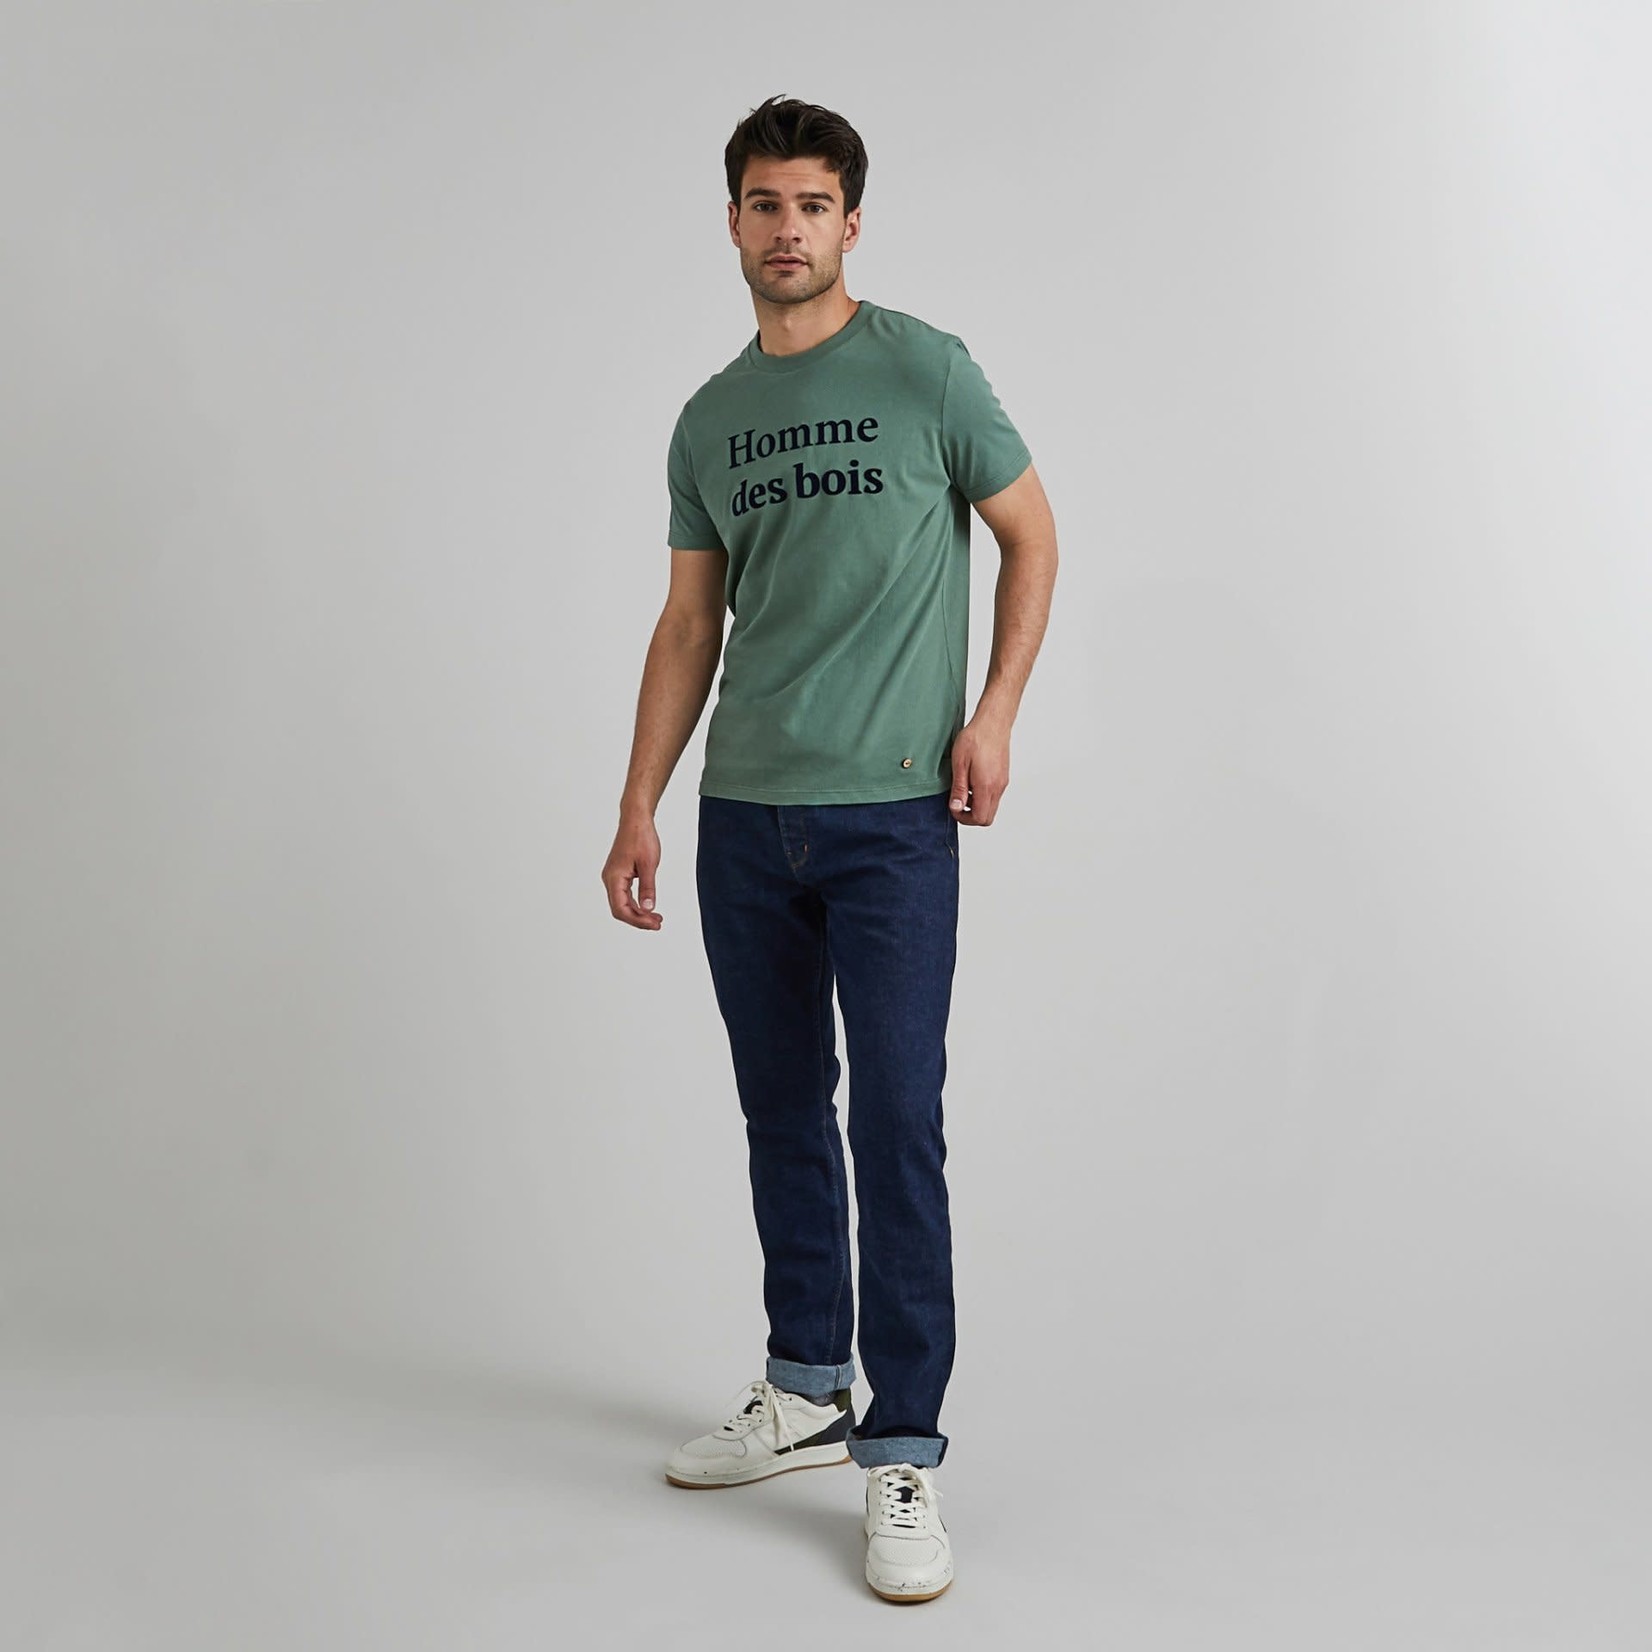 Faguo Faguo - tee-shirt - homme des bois - vert foncé